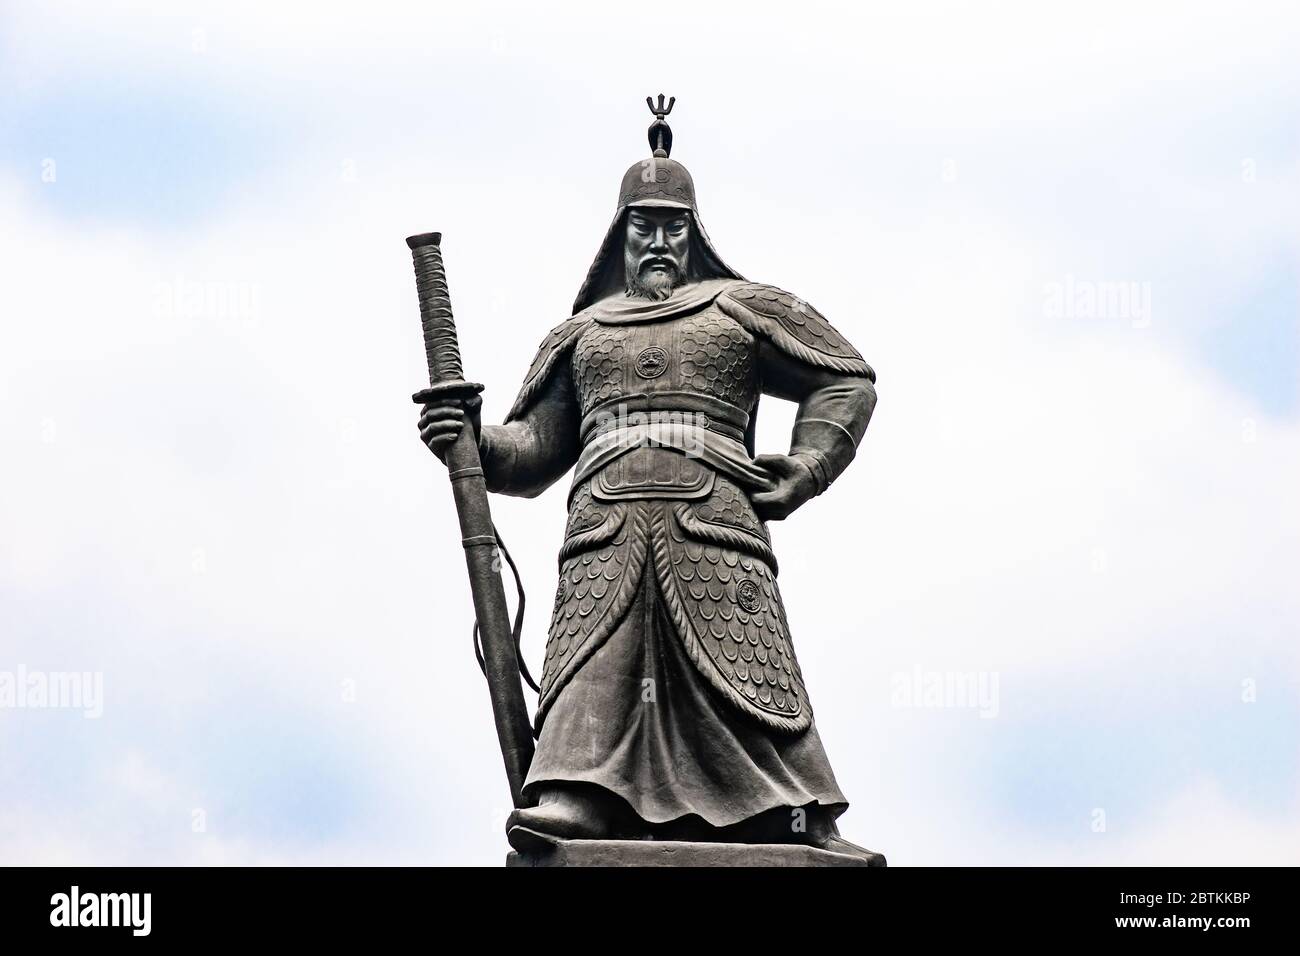 La statua dell'ammiraglio e generale coreano, Yi Sun Shin, situata in piazza Gwanghwamun a Seoul, Corea del Sud. Foto Stock